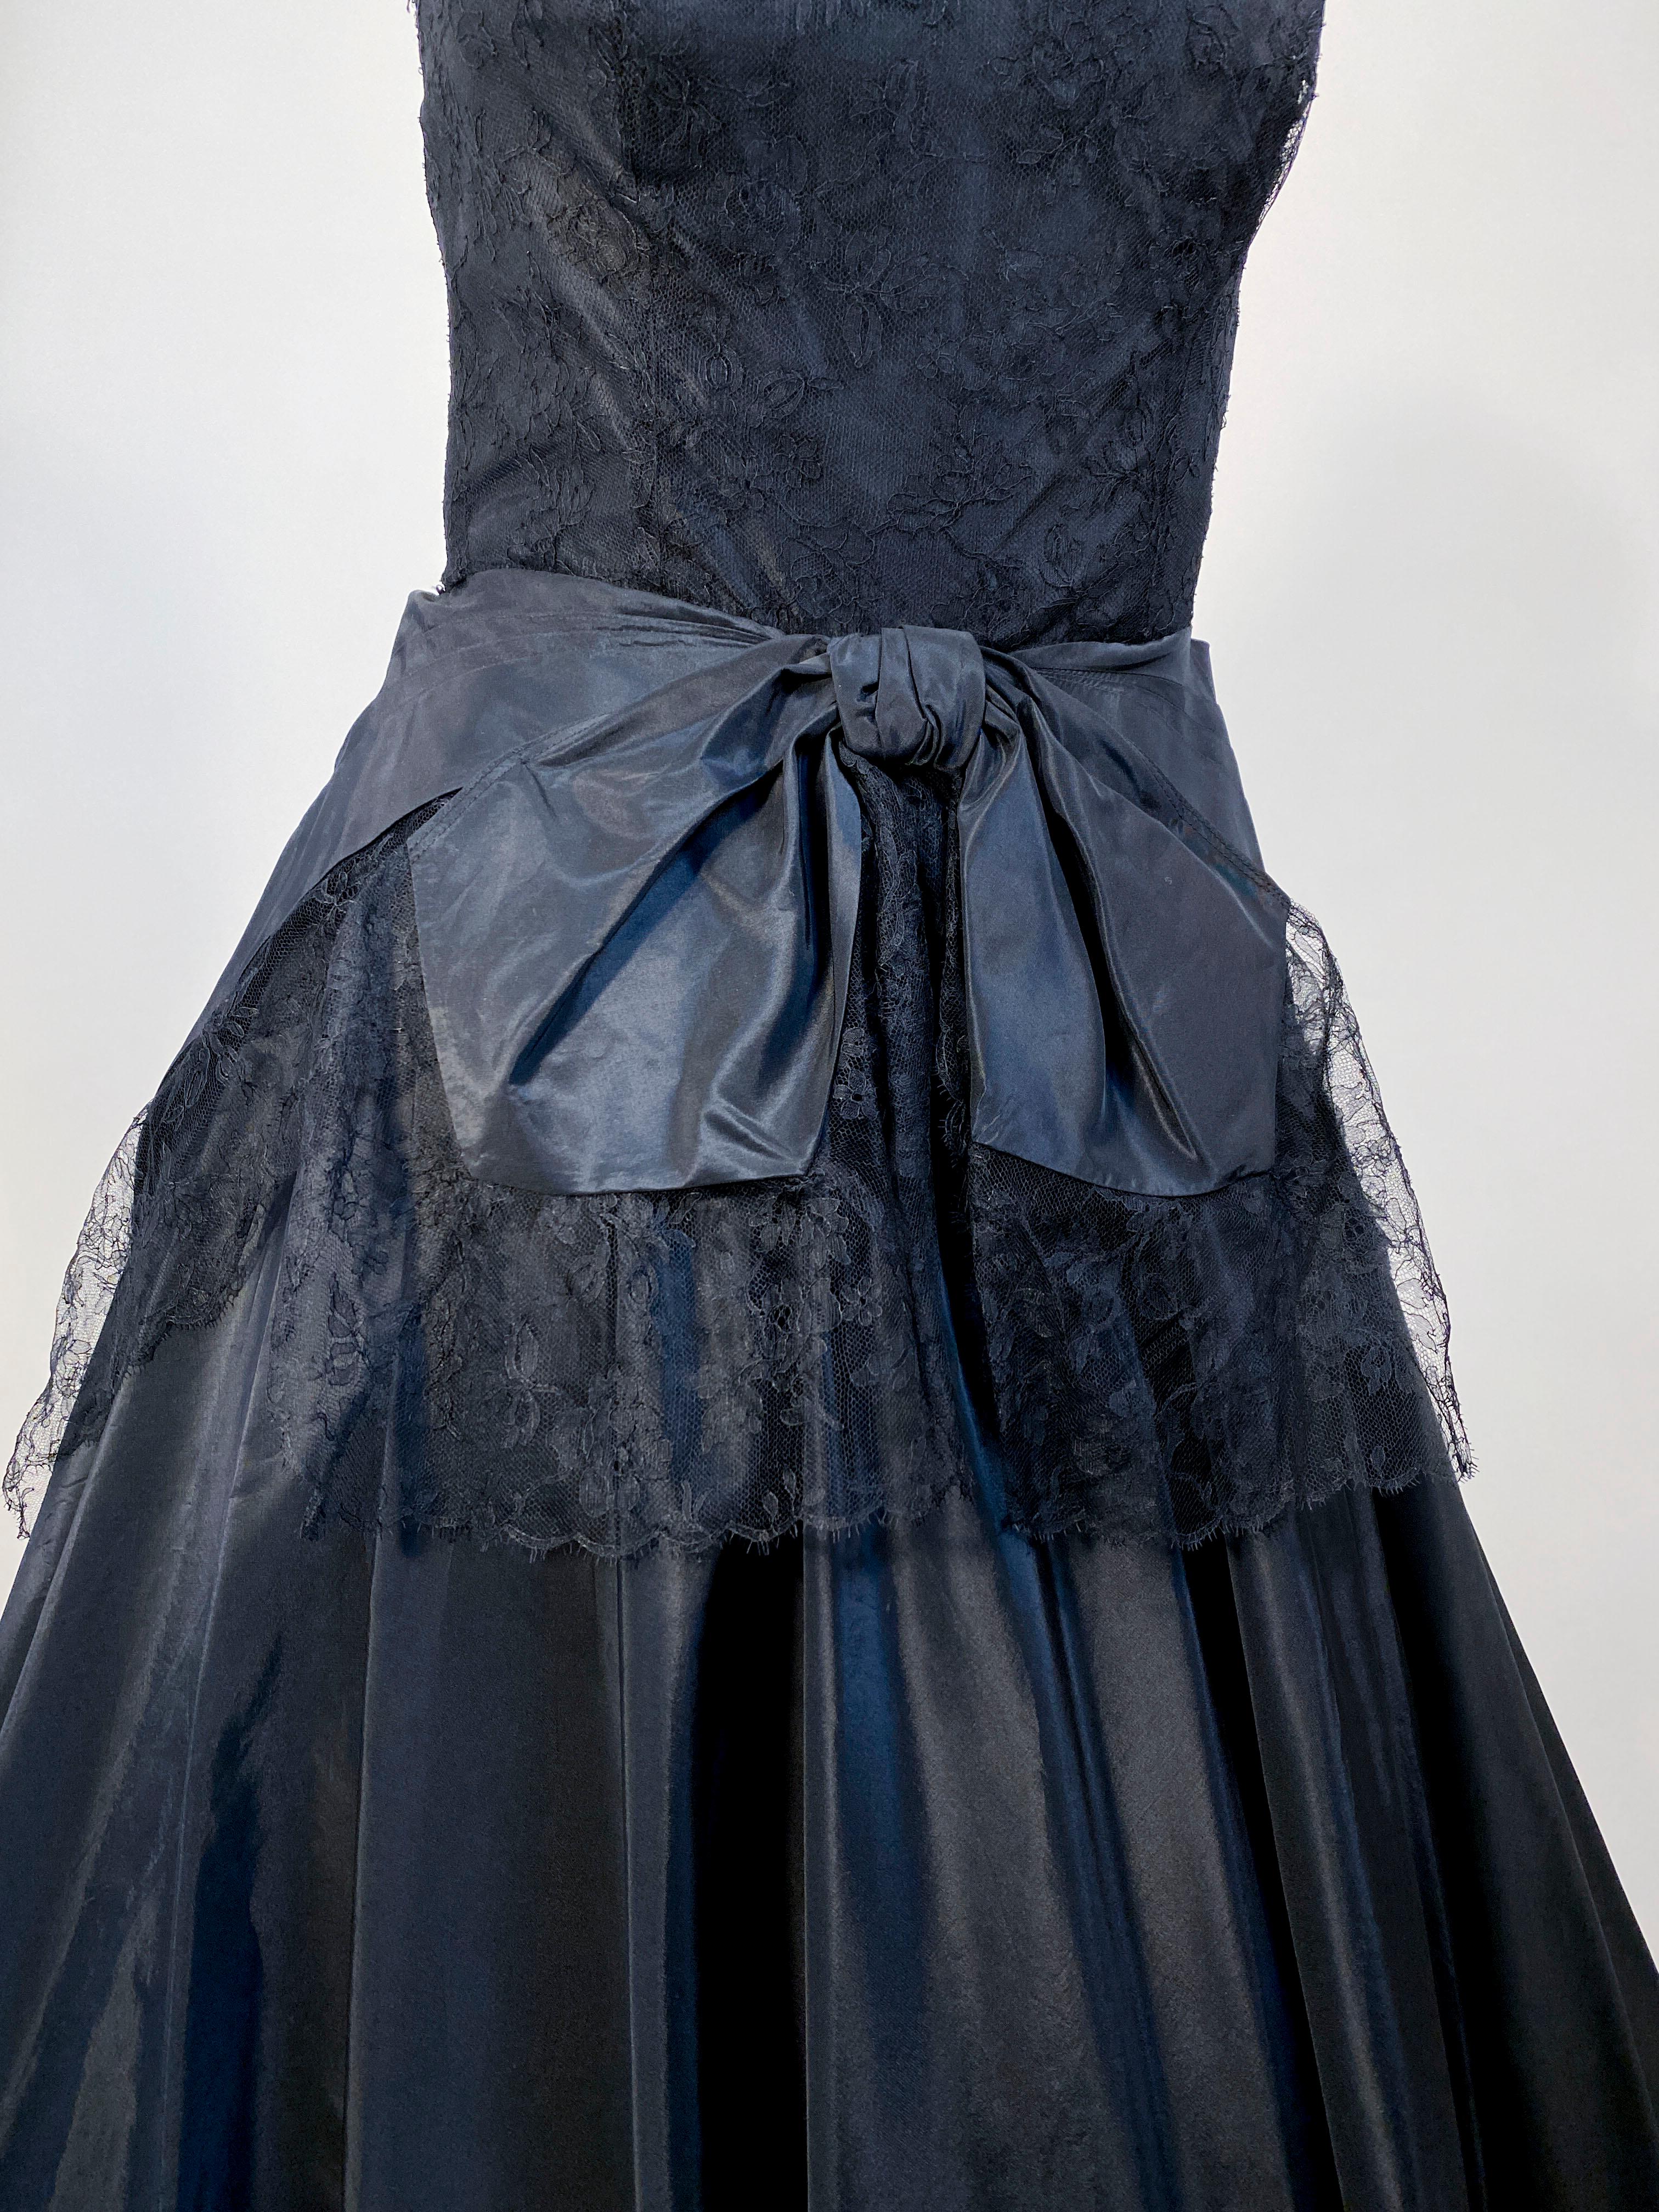 black taffeta dress